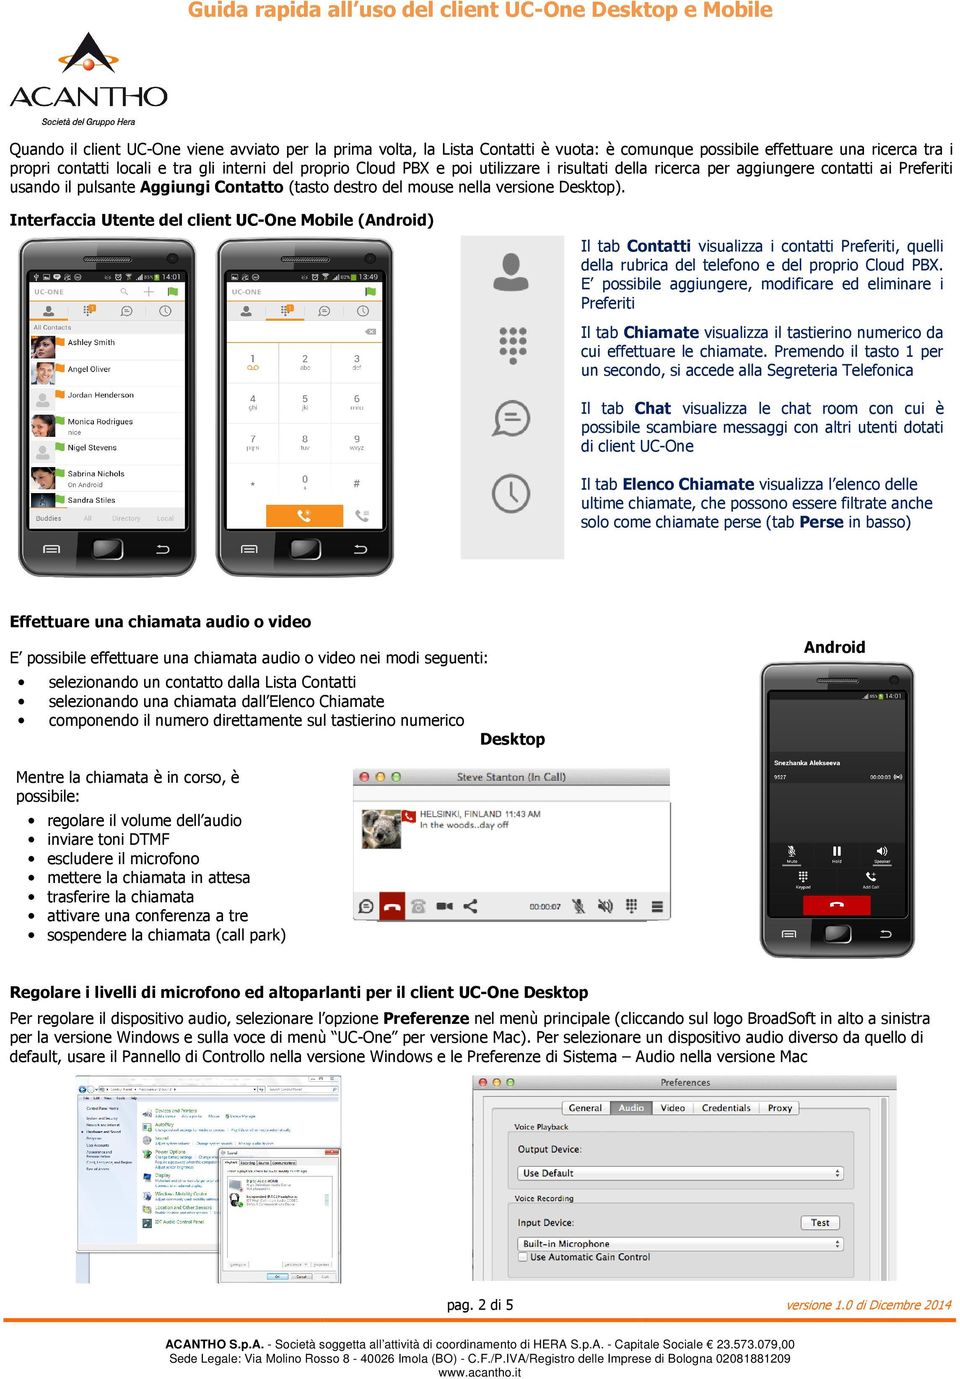 Interfaccia Utente del client UC-One Mobile (Android) Il tab Contatti visualizza i contatti Preferiti, quelli della rubrica del telefono e del proprio Cloud PBX.